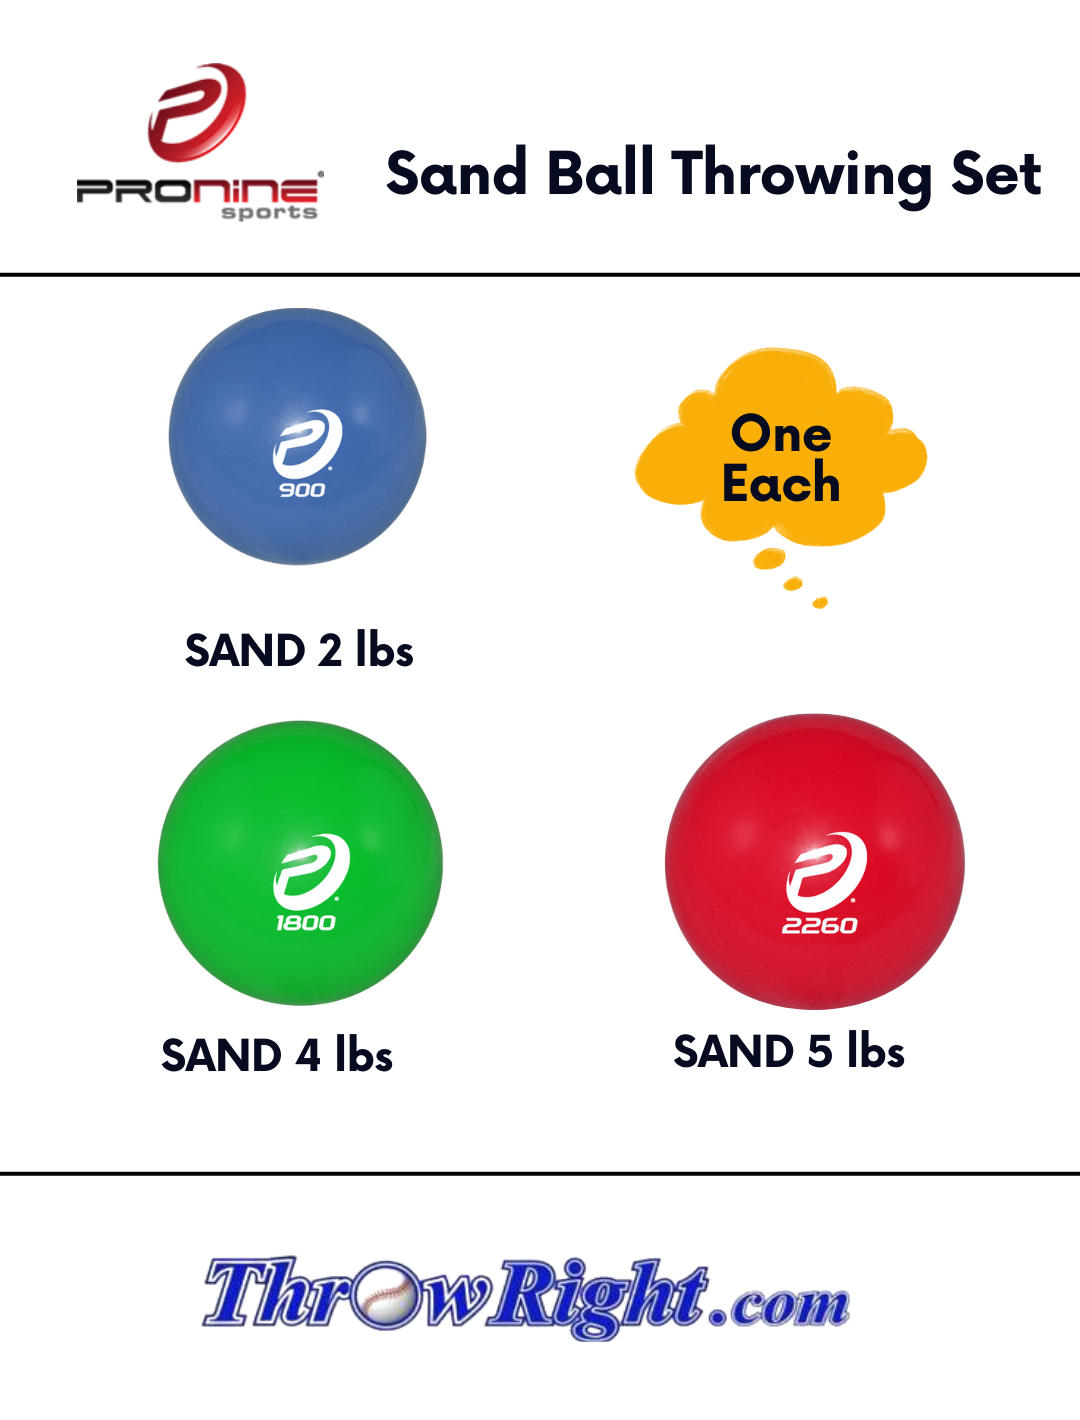 Pronine Sand Ball Throwing Set includes (SAND-2lbs, SAND-4lbs, SAND-5lbs)